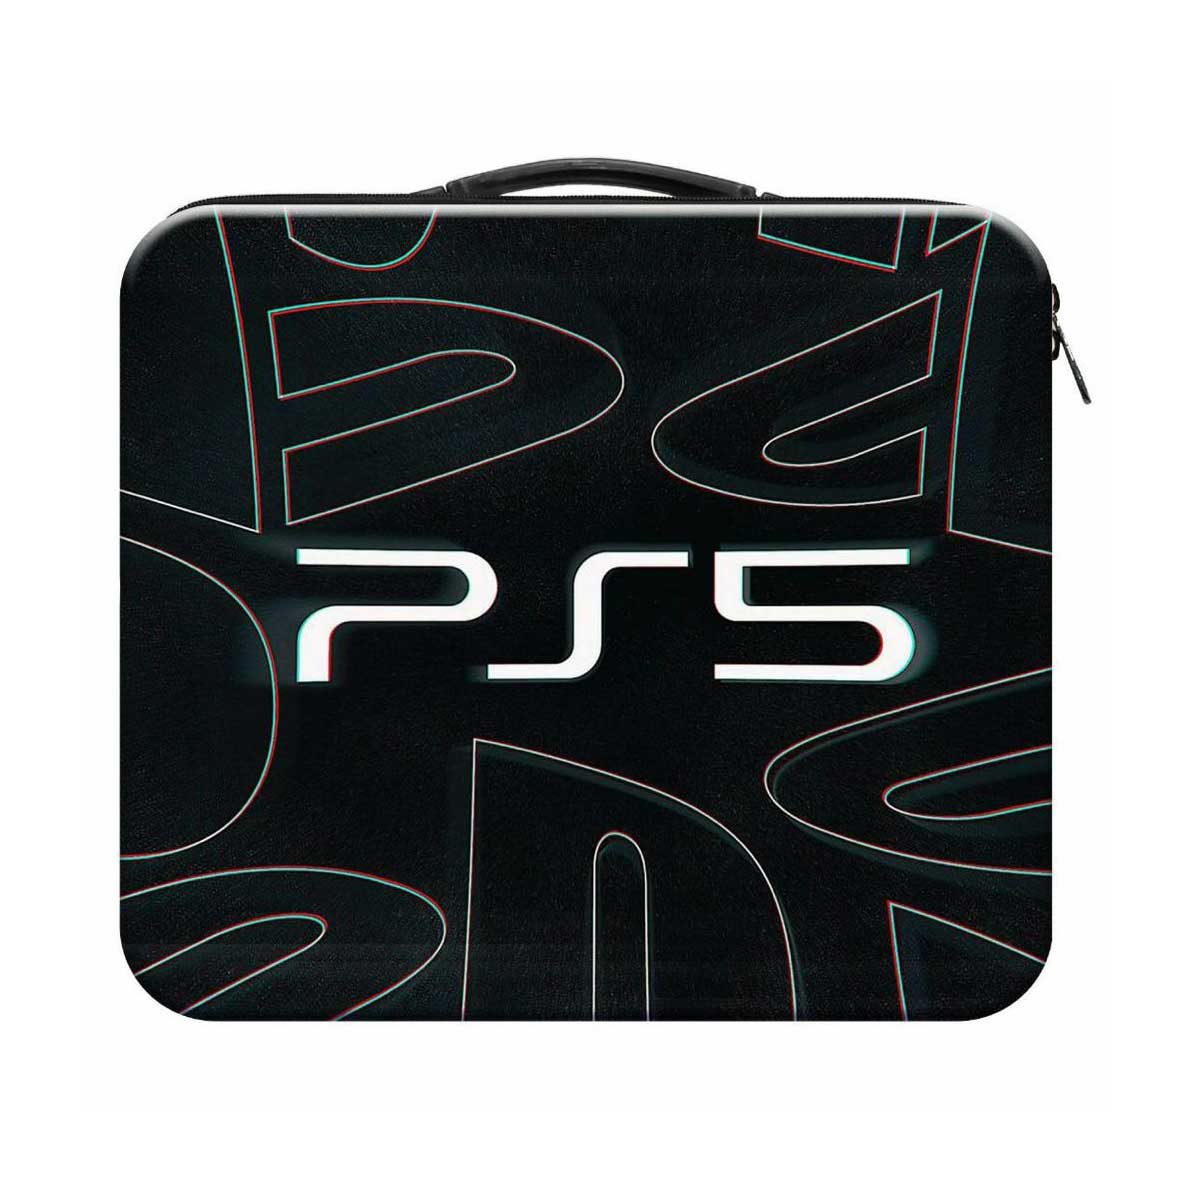 خرید کیف حمل پلی استیشن 5 طرح PS5